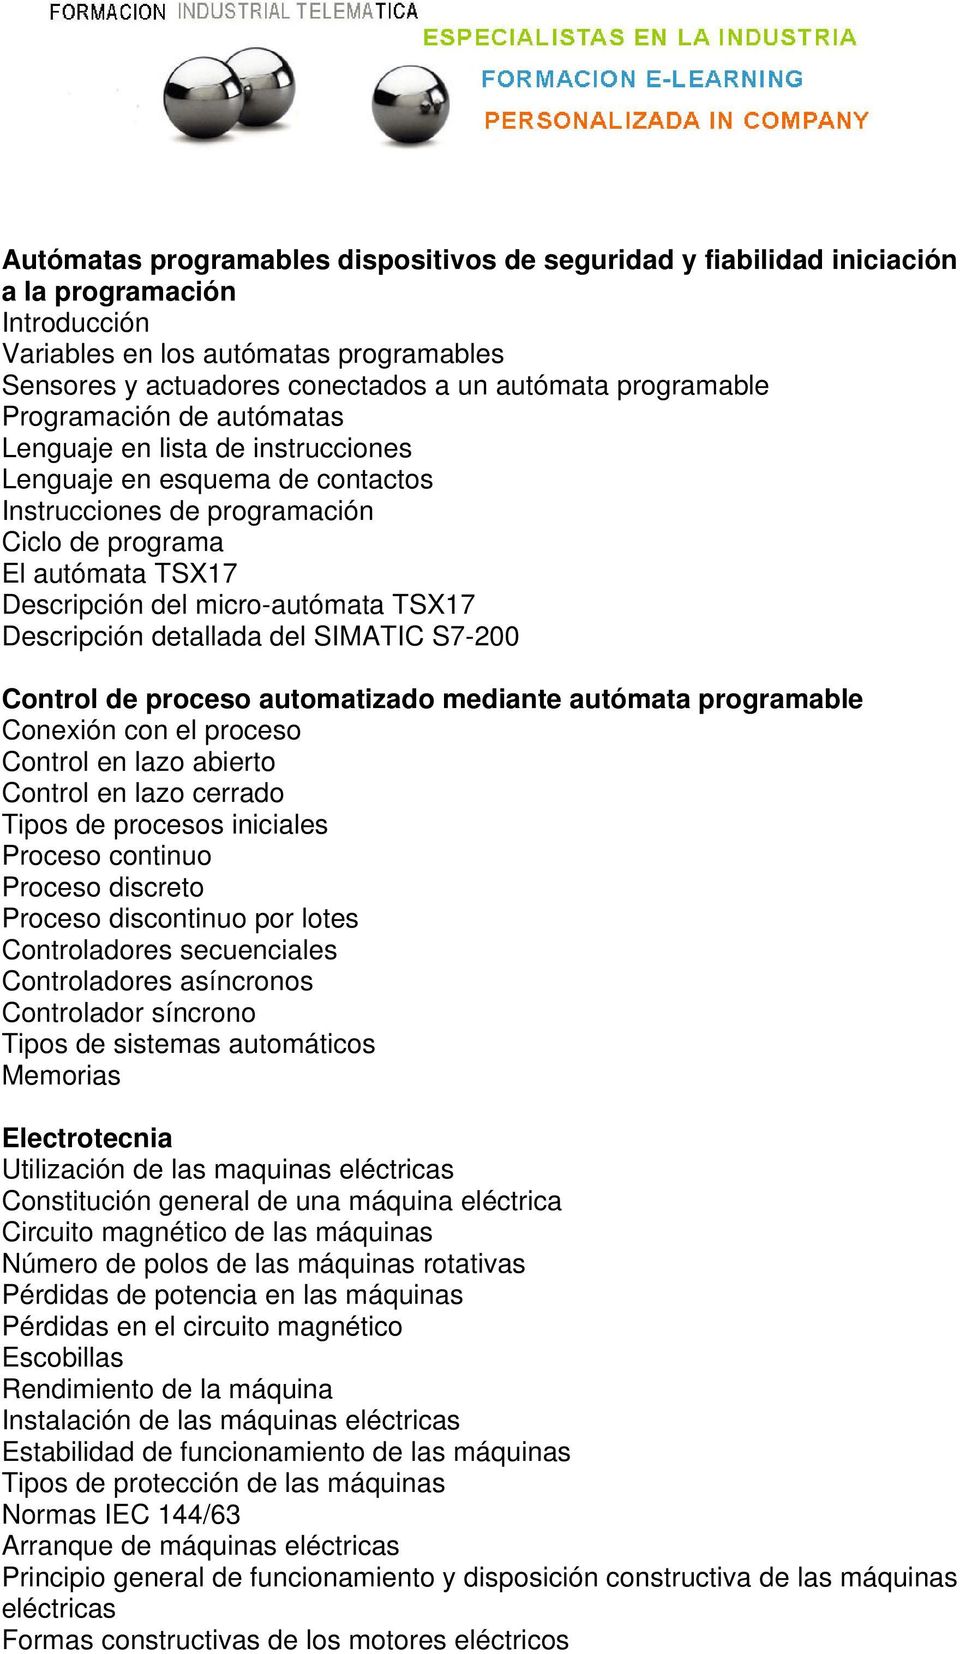 micro-autómata TSX17 Descripción detallada del SIMATIC S7-200 Control de proceso automatizado mediante autómata programable Conexión con el proceso Control en lazo abierto Control en lazo cerrado